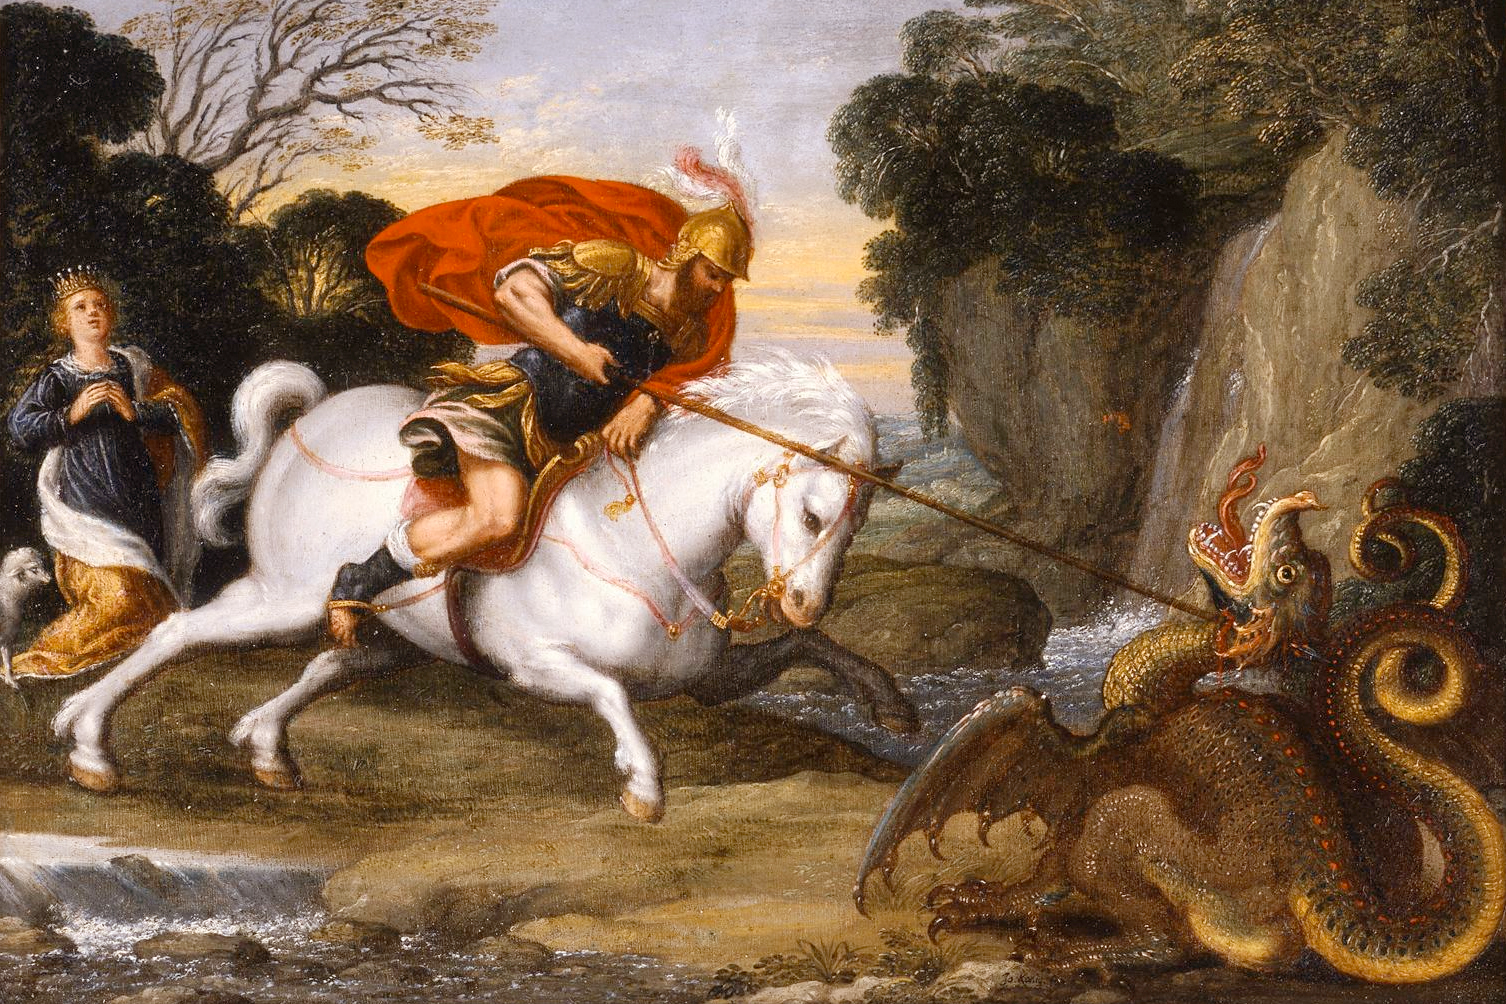 Saint George Defeating the Dragon by Johann König, c. 1630 via Flickr